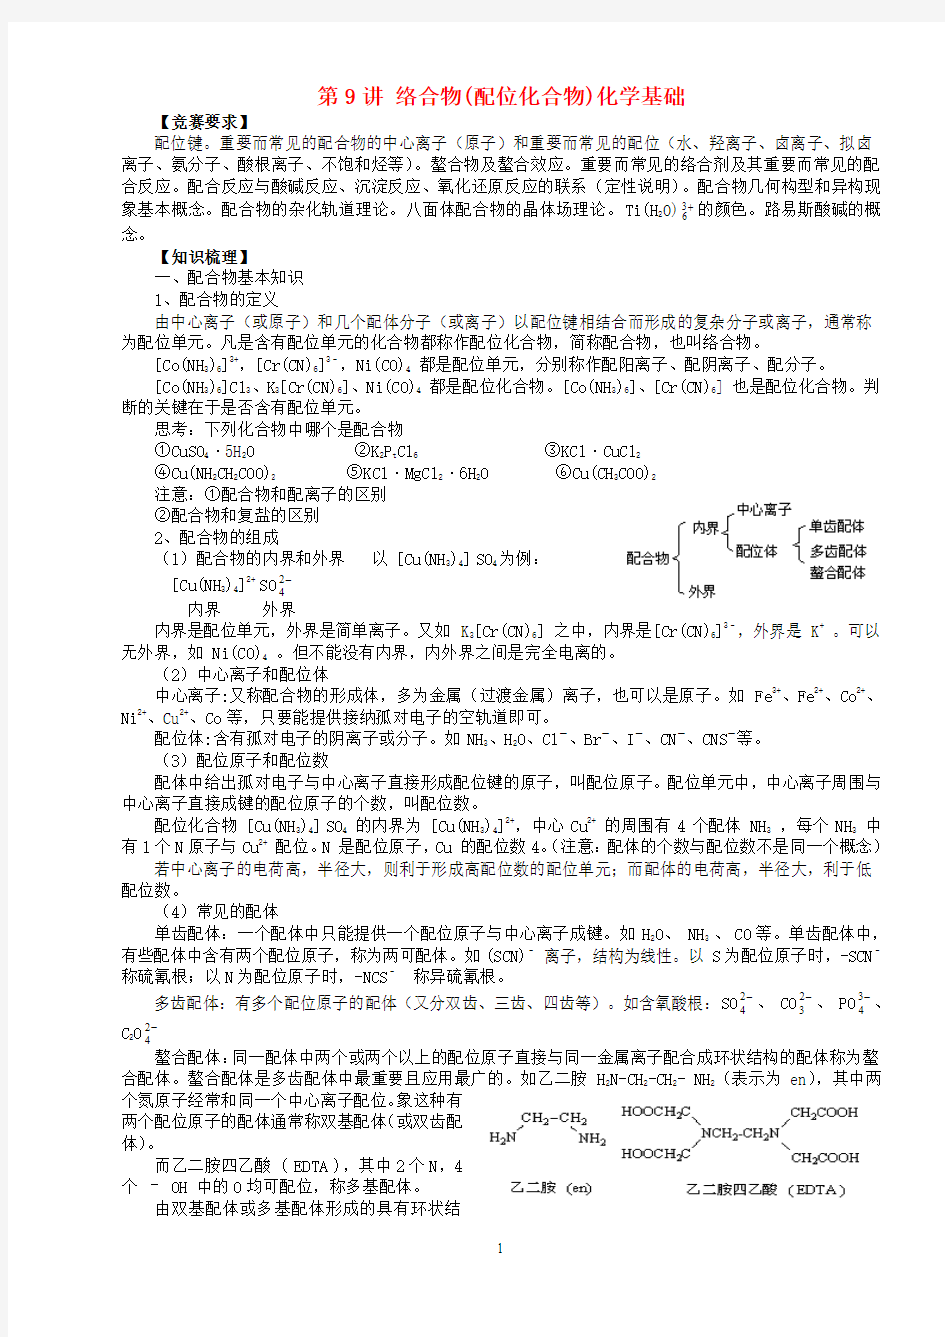 北京市一零一中学2013年高中化学竞赛 第9讲 络合物(配位化合物)化学基础